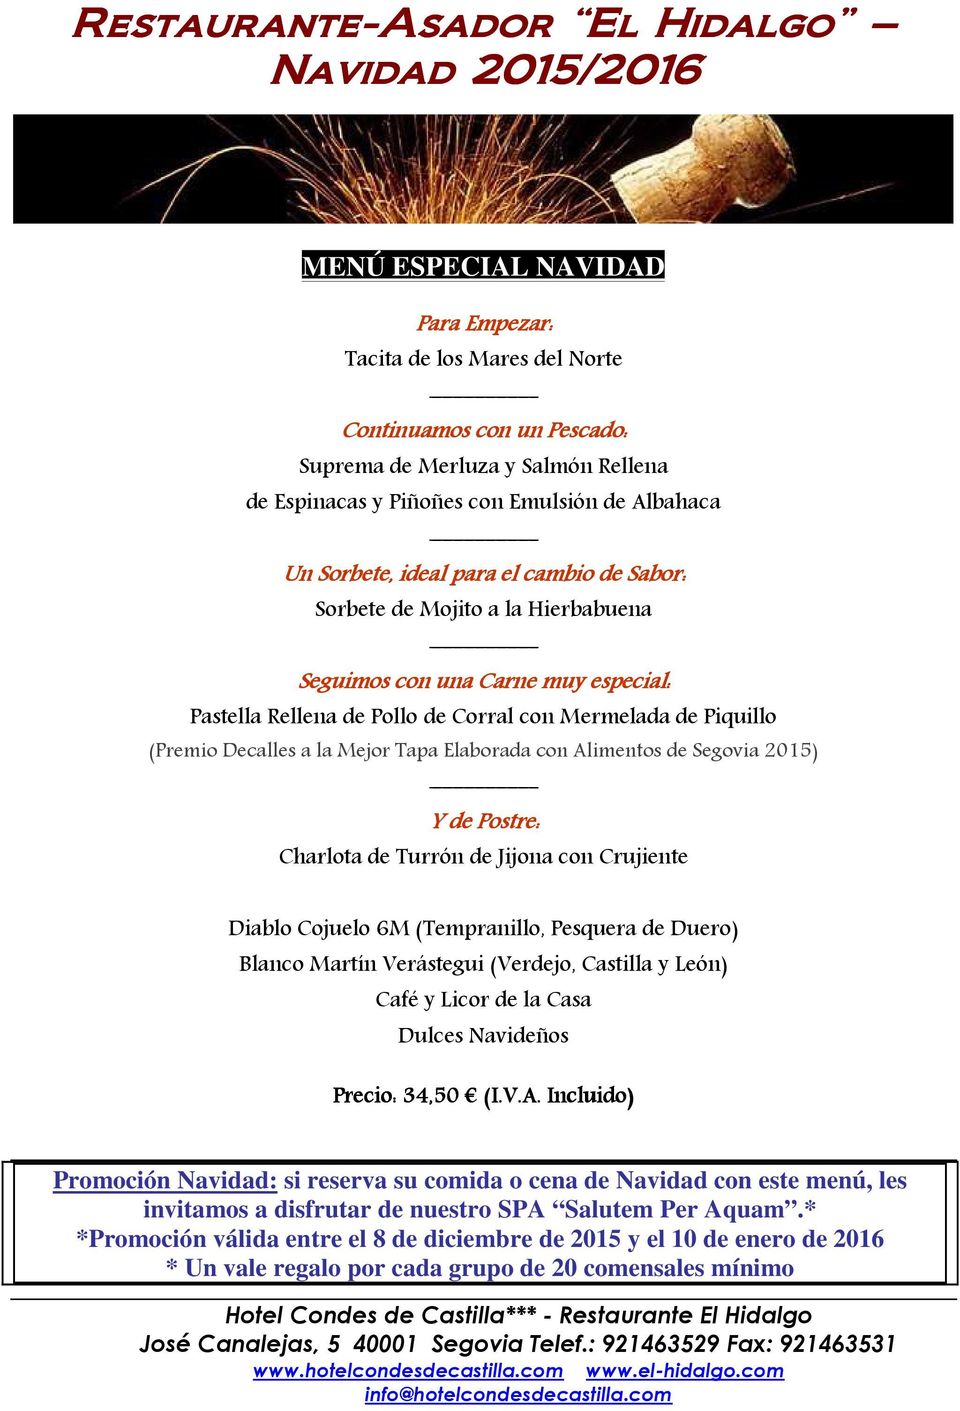 Alimentos de Segovia 2015) Y de Postre: Charlota de Turrn de Jijona con Crujiente Diablo Cojuelo 6M (Temranillo, Pesquera de Duero) Blanco Martín Verástegui (Verdejo, Castilla y Len) Café y Licor de